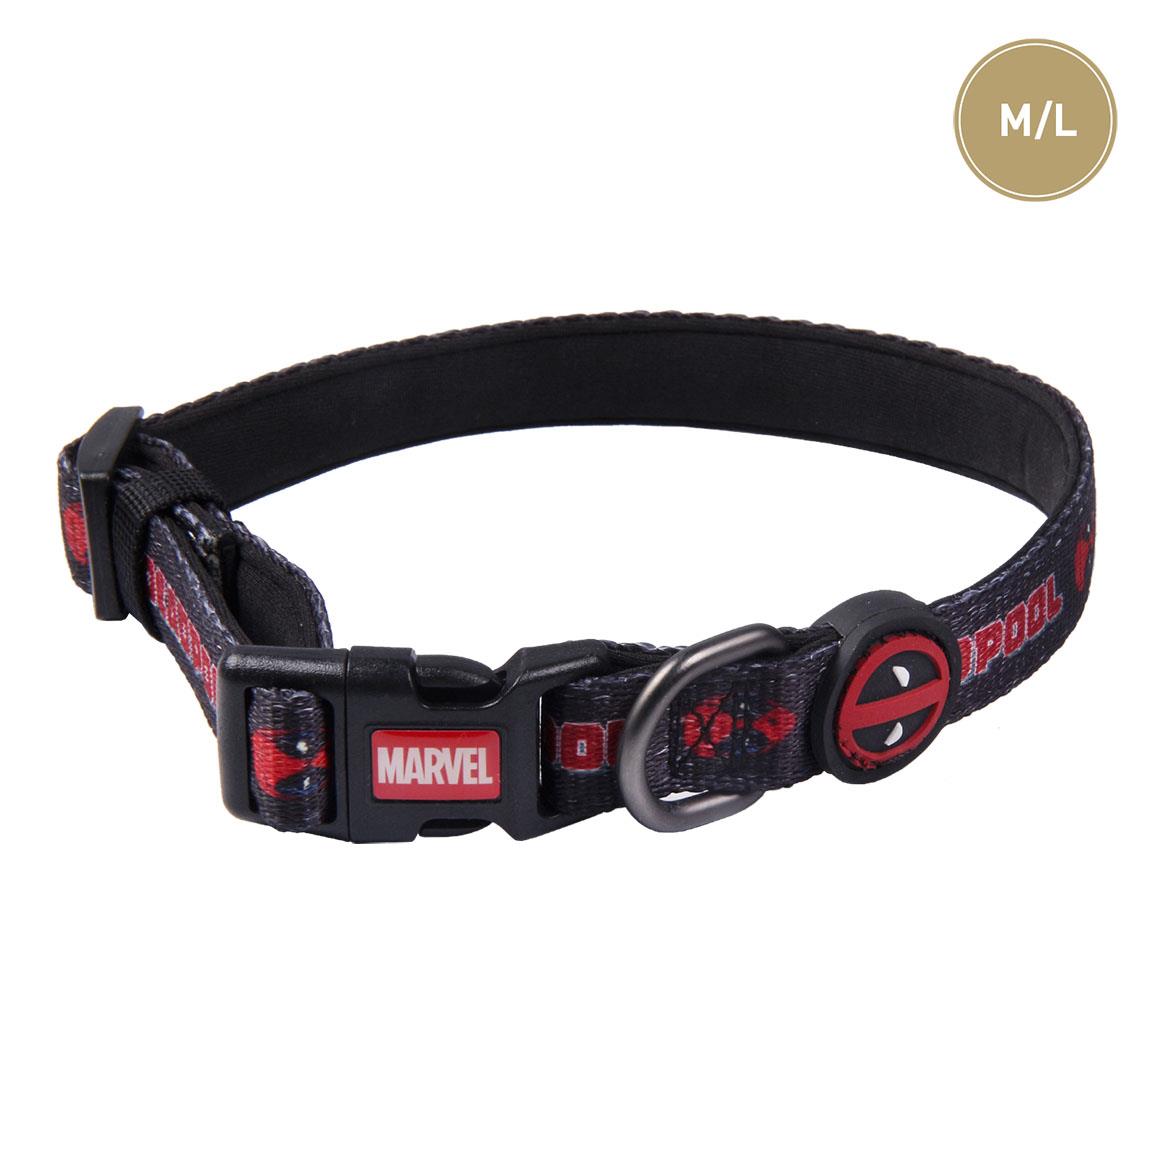 Deadpool Dog Collar Premium M/L